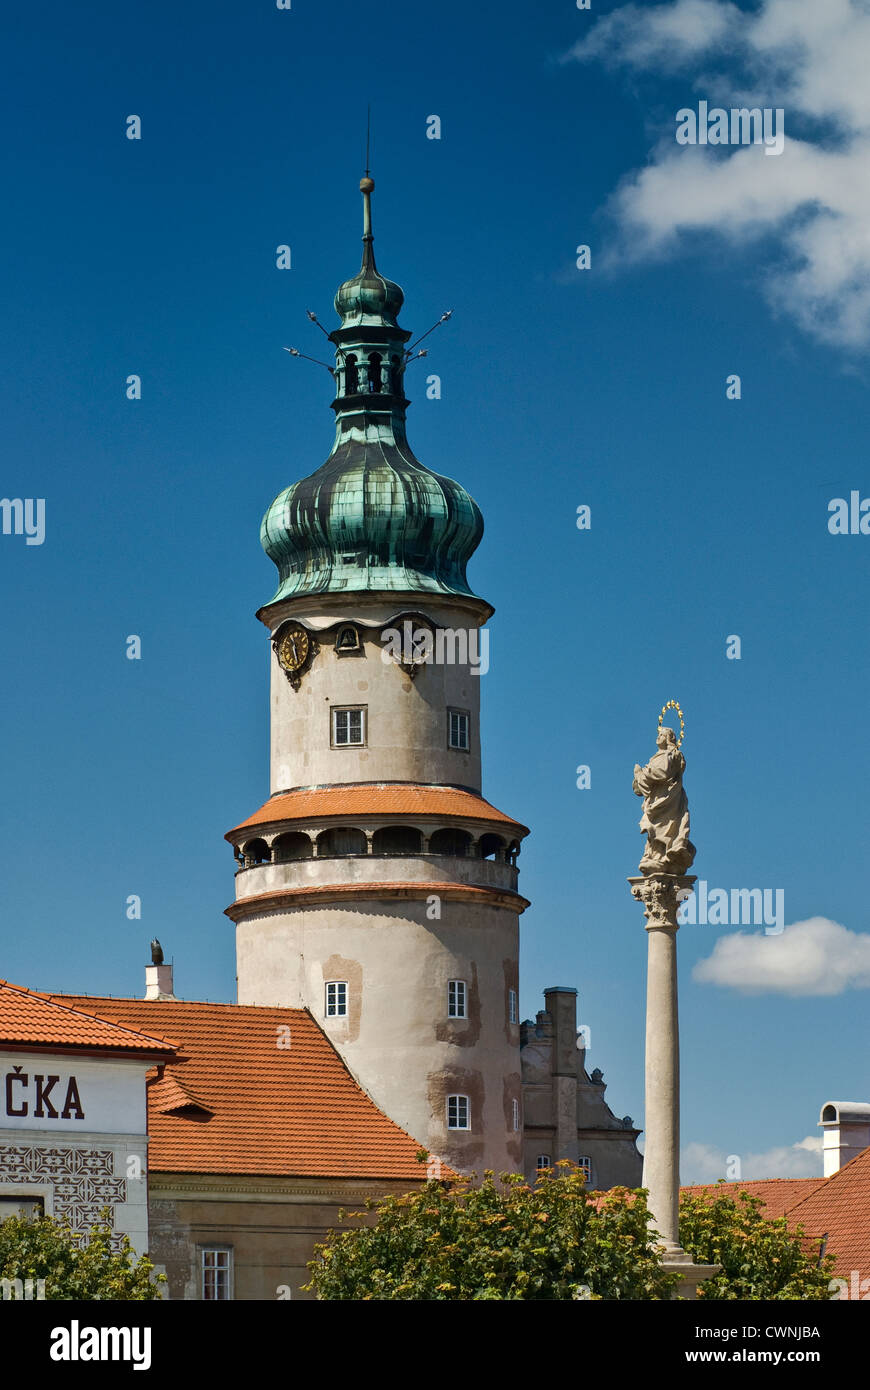 Castle tower and column at Nové Město nad Metují in Kralovehradecky kraj (Hradec Králové Region), Czech Republic Stock Photo